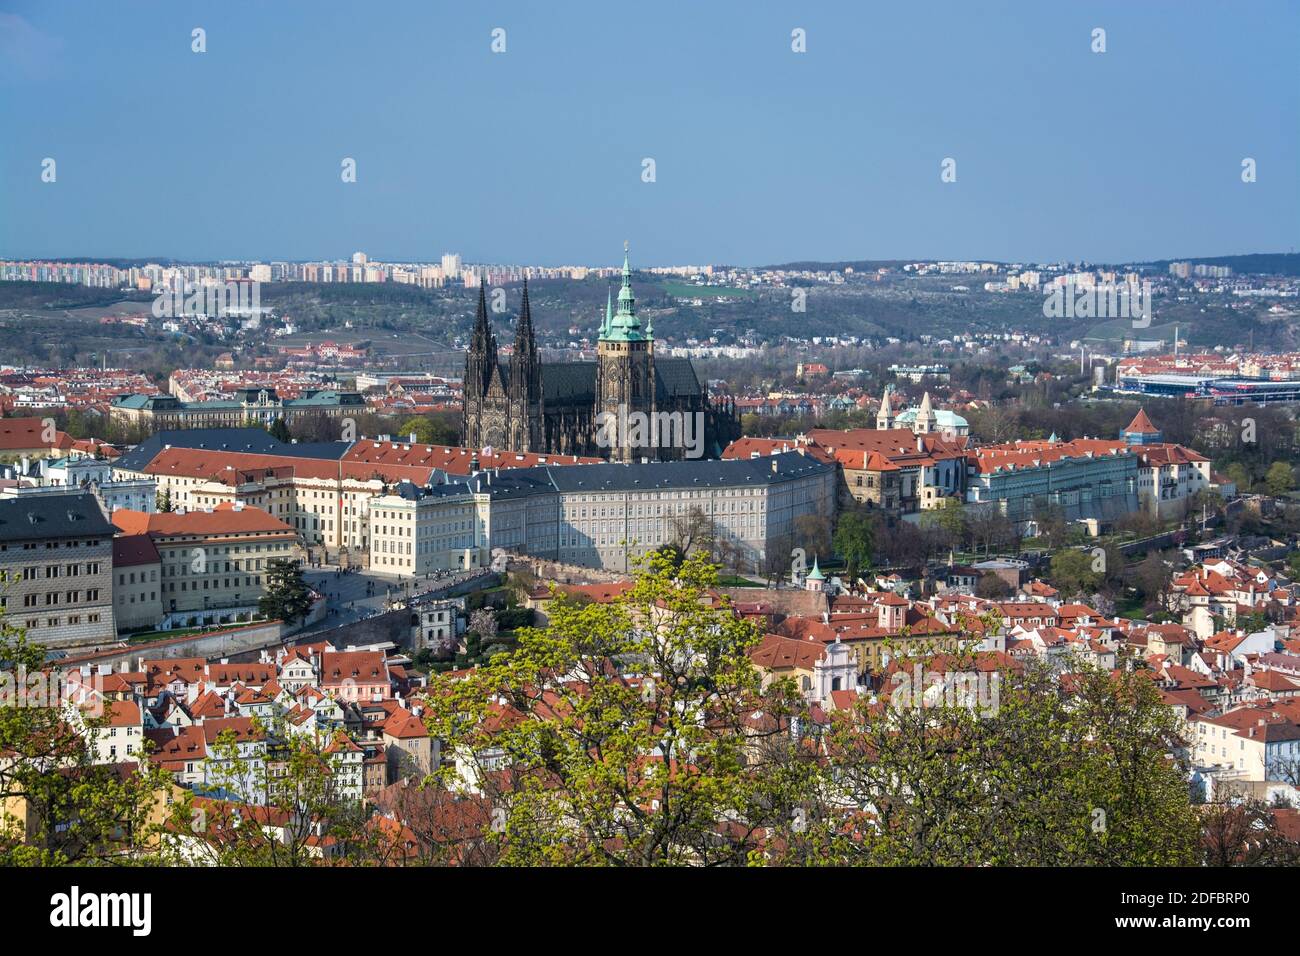 Prag ist die Hauptstadt der Tschechischen Republik und liegt an der Moldau. Die 'Stadt der hundert Tuerme' ist bekannt für den Altstaedter Ring mit bu Stock Photo